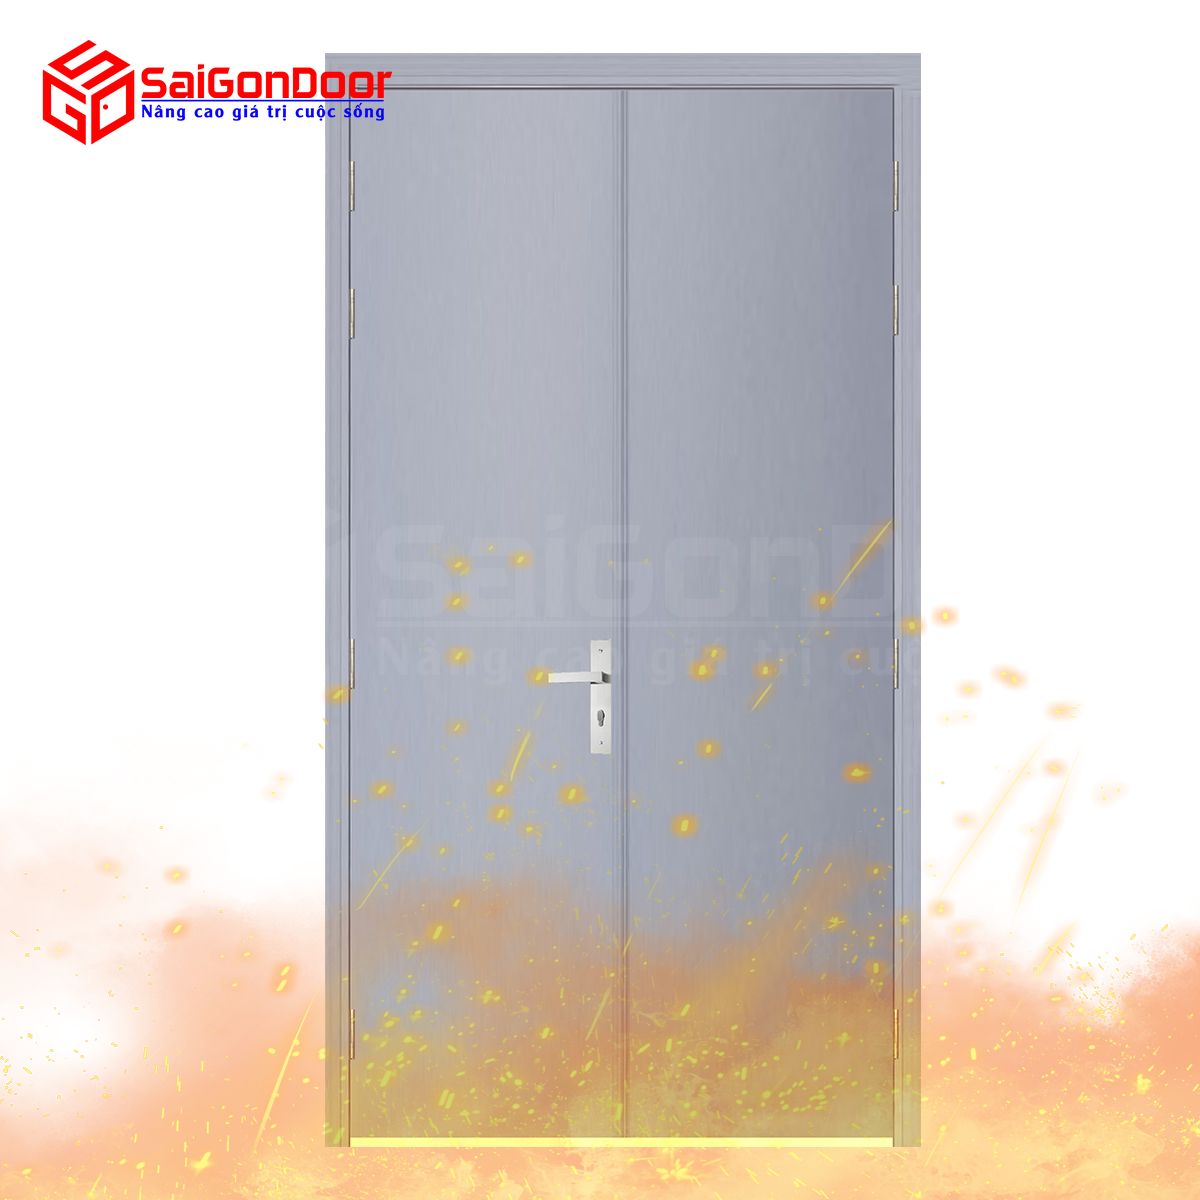 SaiiGonDoor cung cấp đa dạng mẫu cửa chống cháy với nhiều mức giá khác nhau